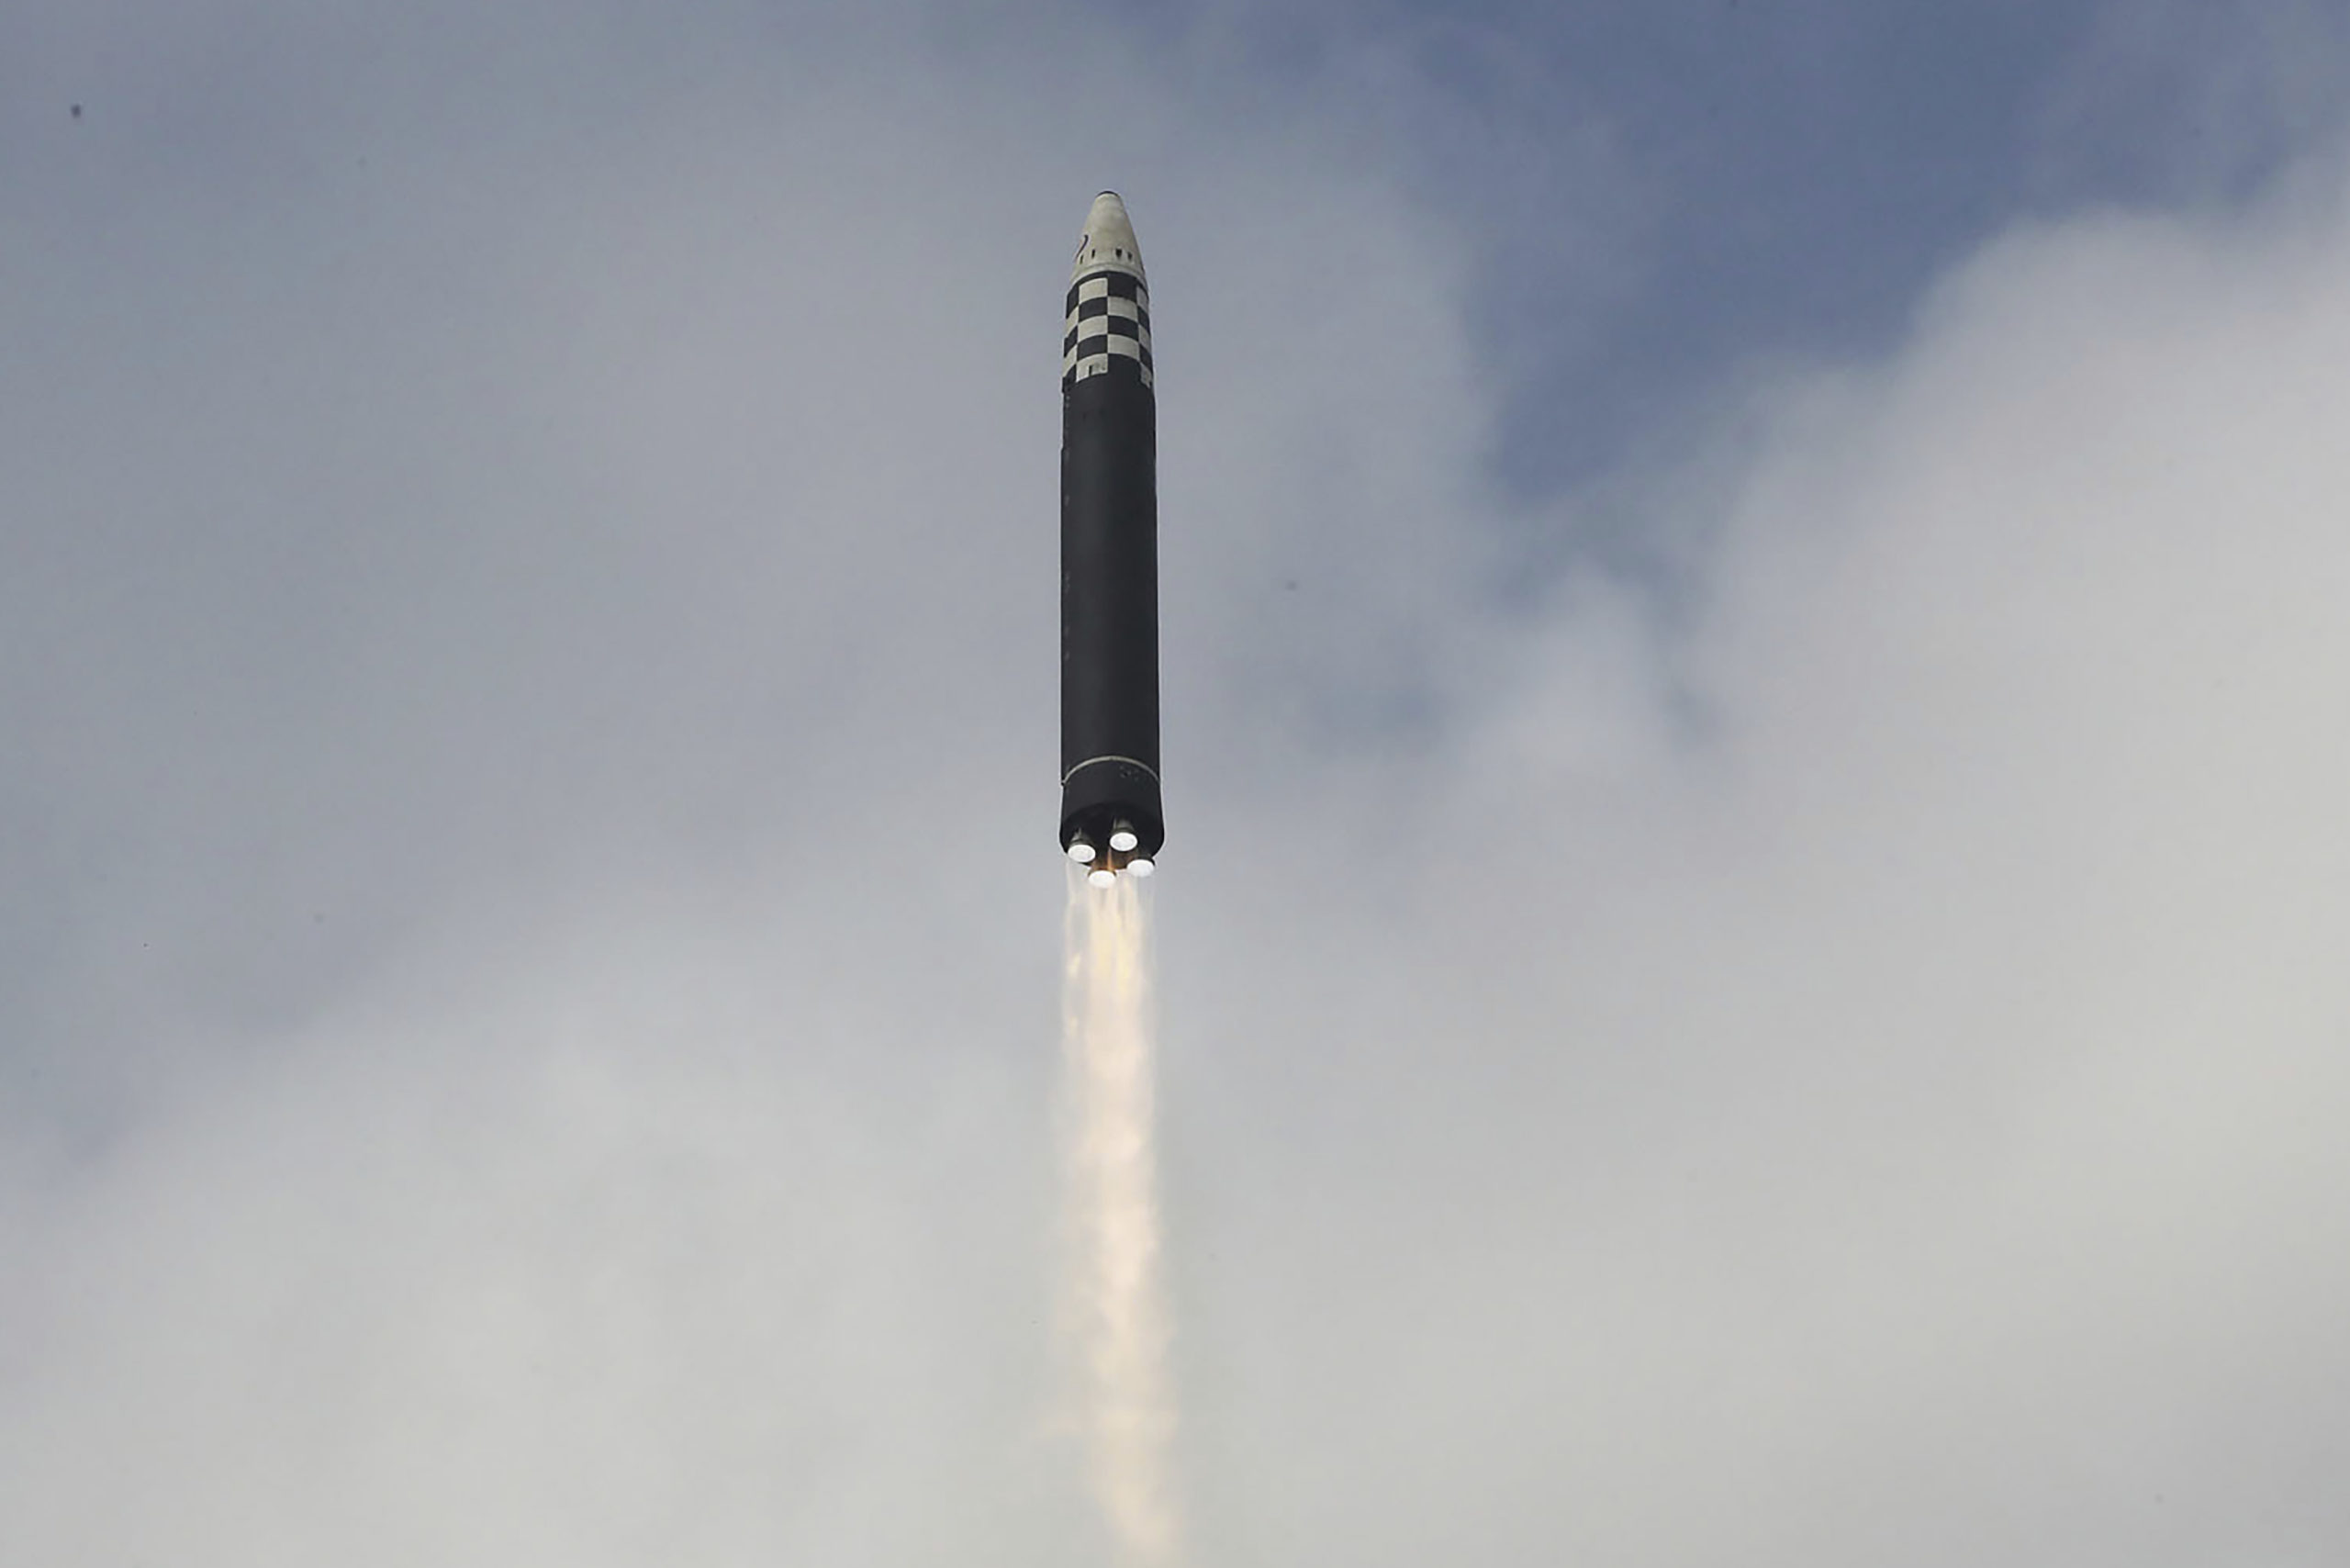 ΥΠΕΞ G7: Aπαιτούν βαρύτερες κυρώσεις στη Βόρεια Κορέα για την «ανεύθυνη» εκτόξευση ICBM